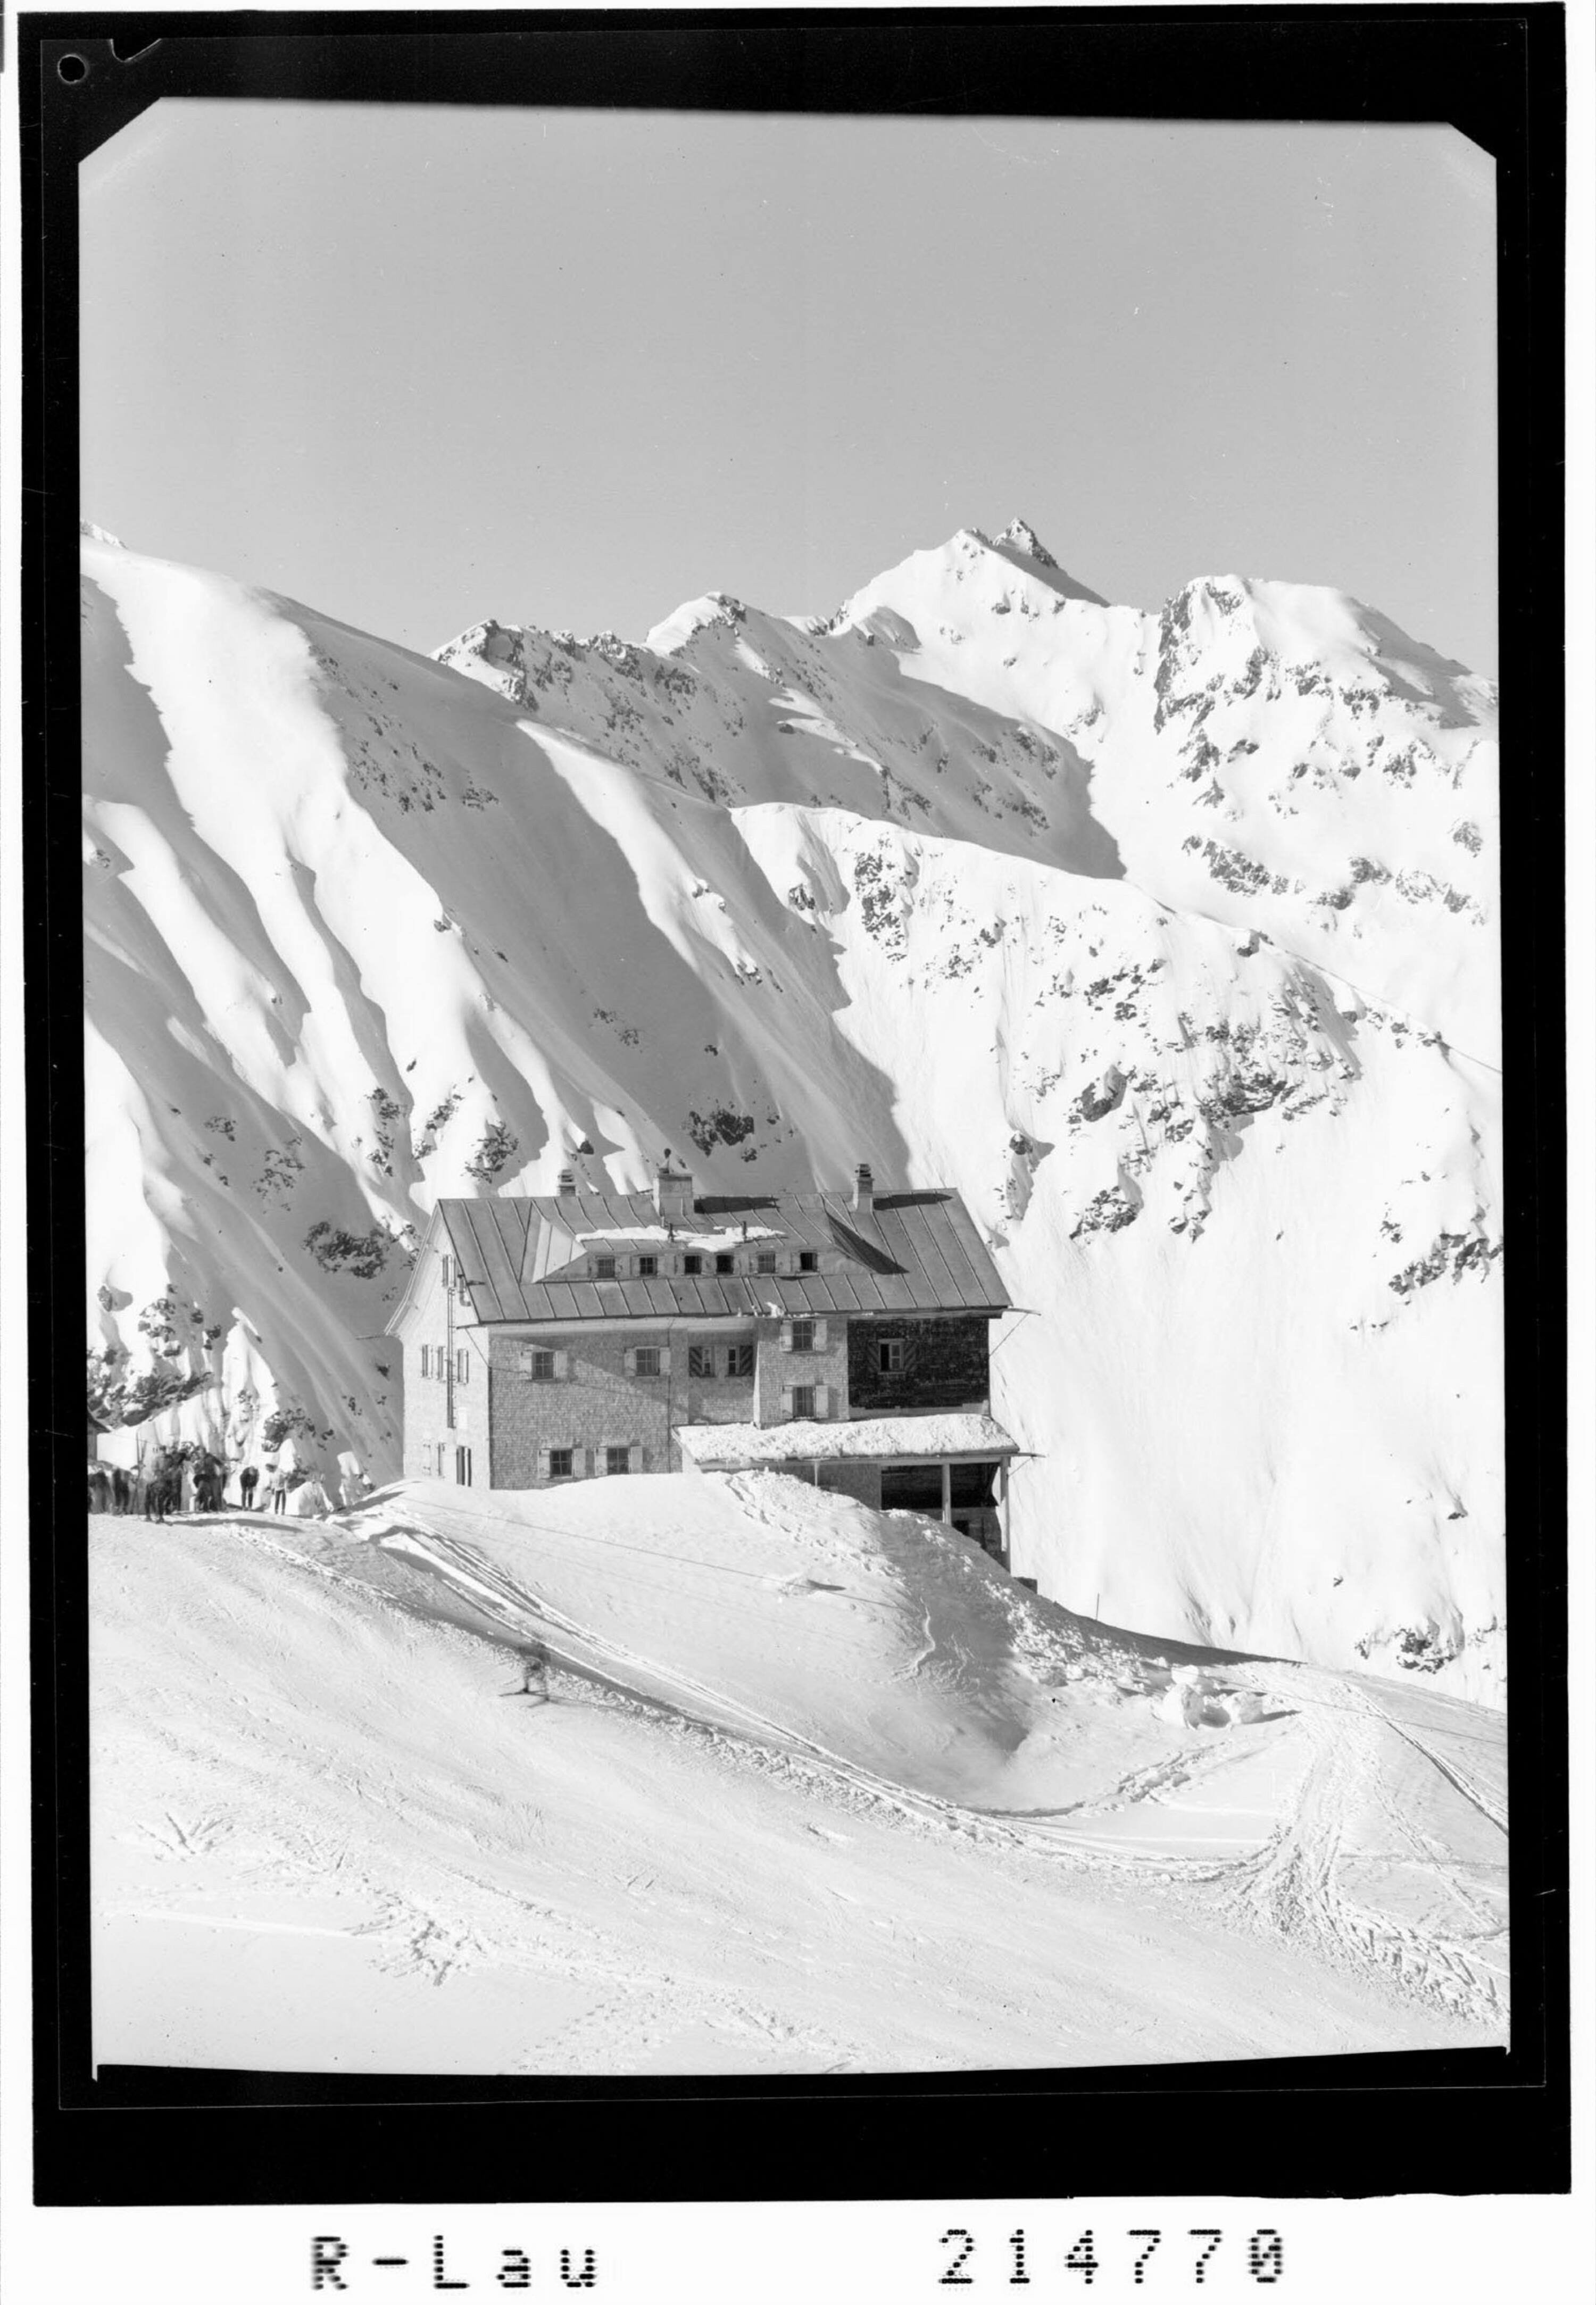 Kaltenberg Hütte 2100 m gegen Eisentaler Spitze 2752 m></div>


    <hr>
    <div class=